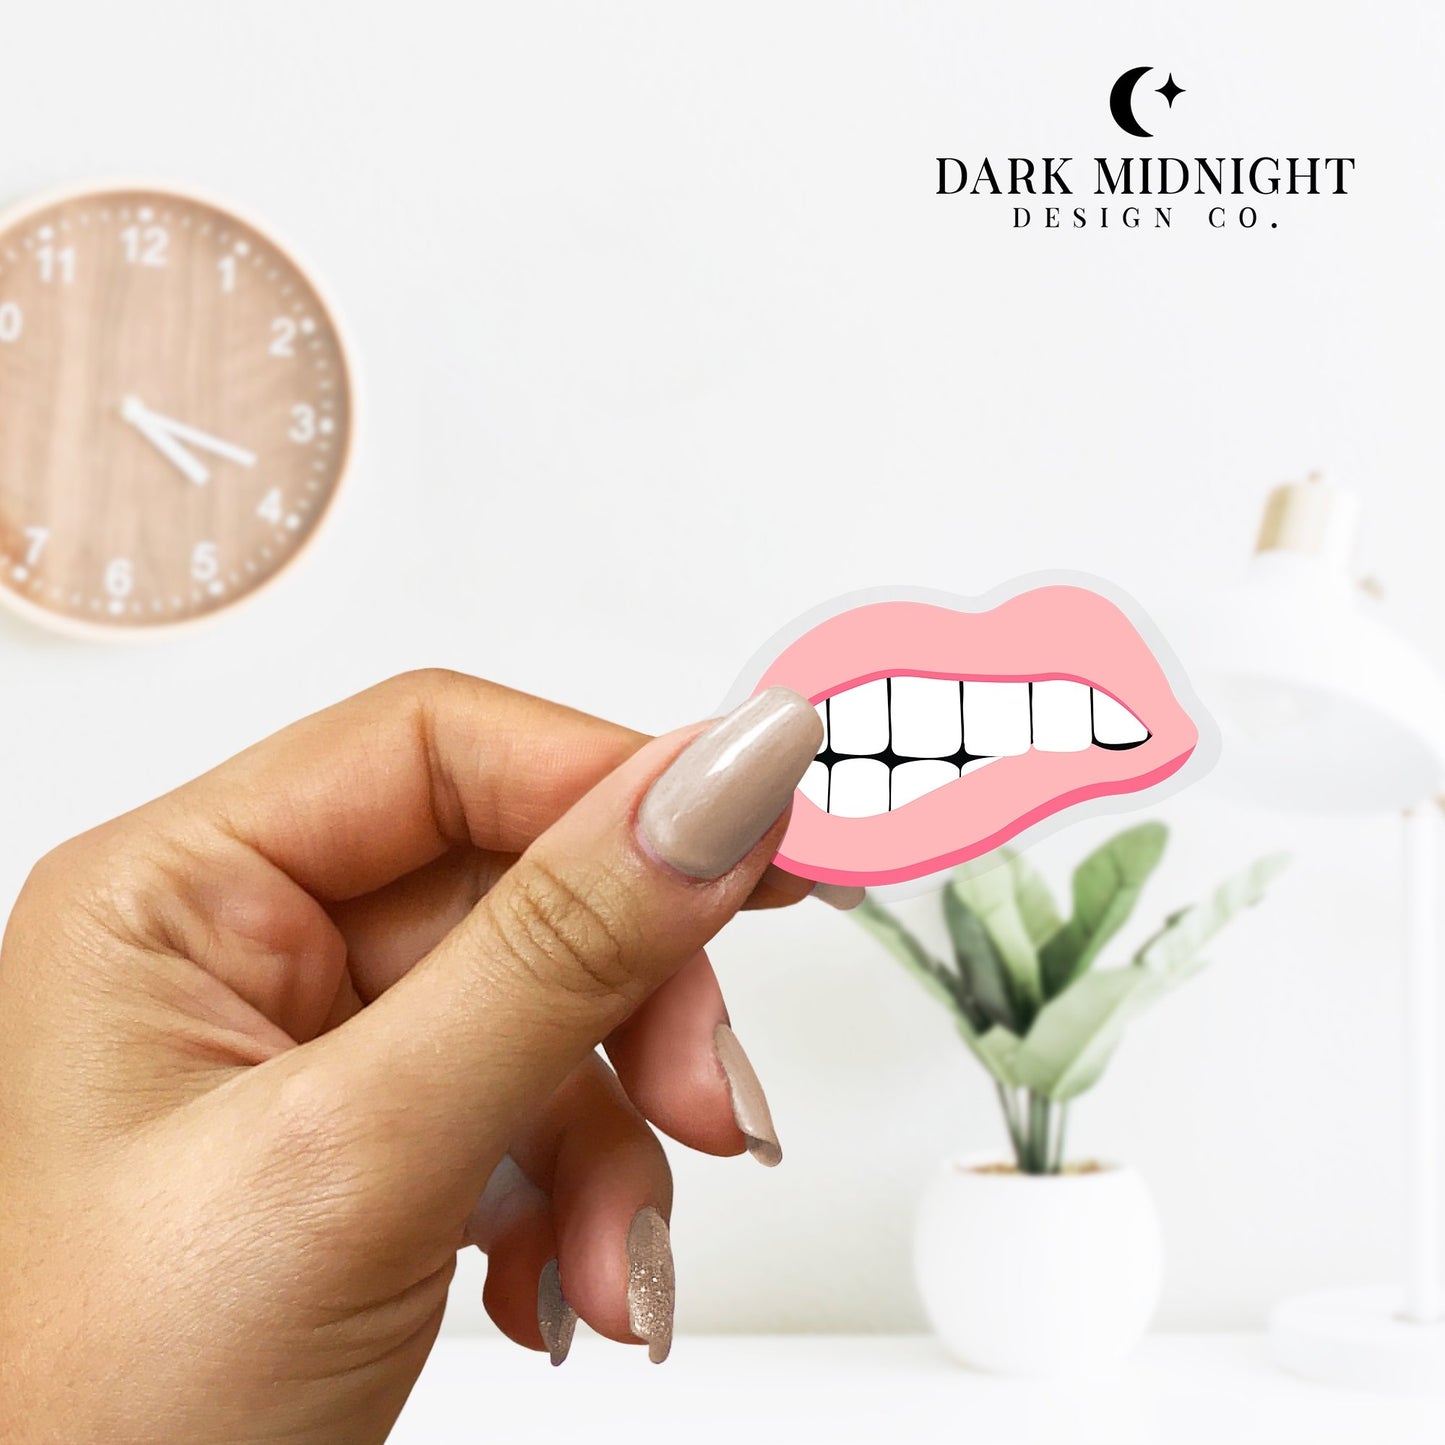 Bite My Lip Sticker - Dark Midnight Design Co